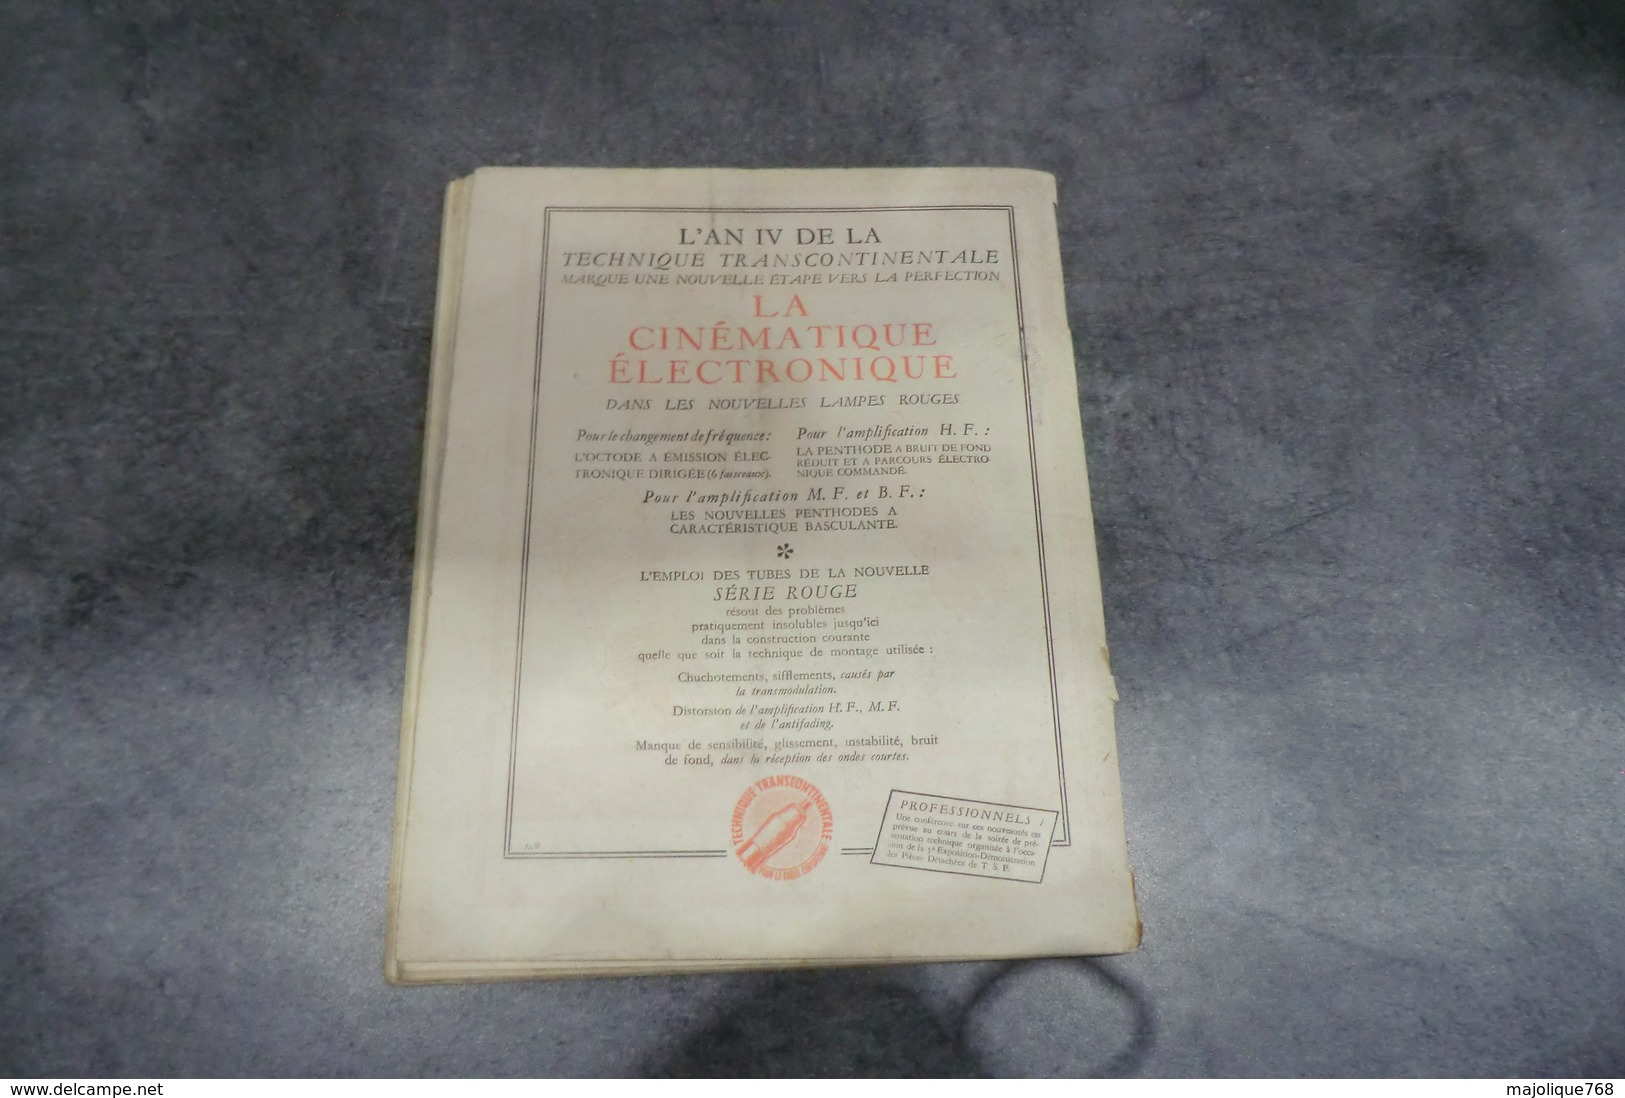 Revue Toute La Radio Par Eugène Aisberg - N°49 De Février 1938 - - Components